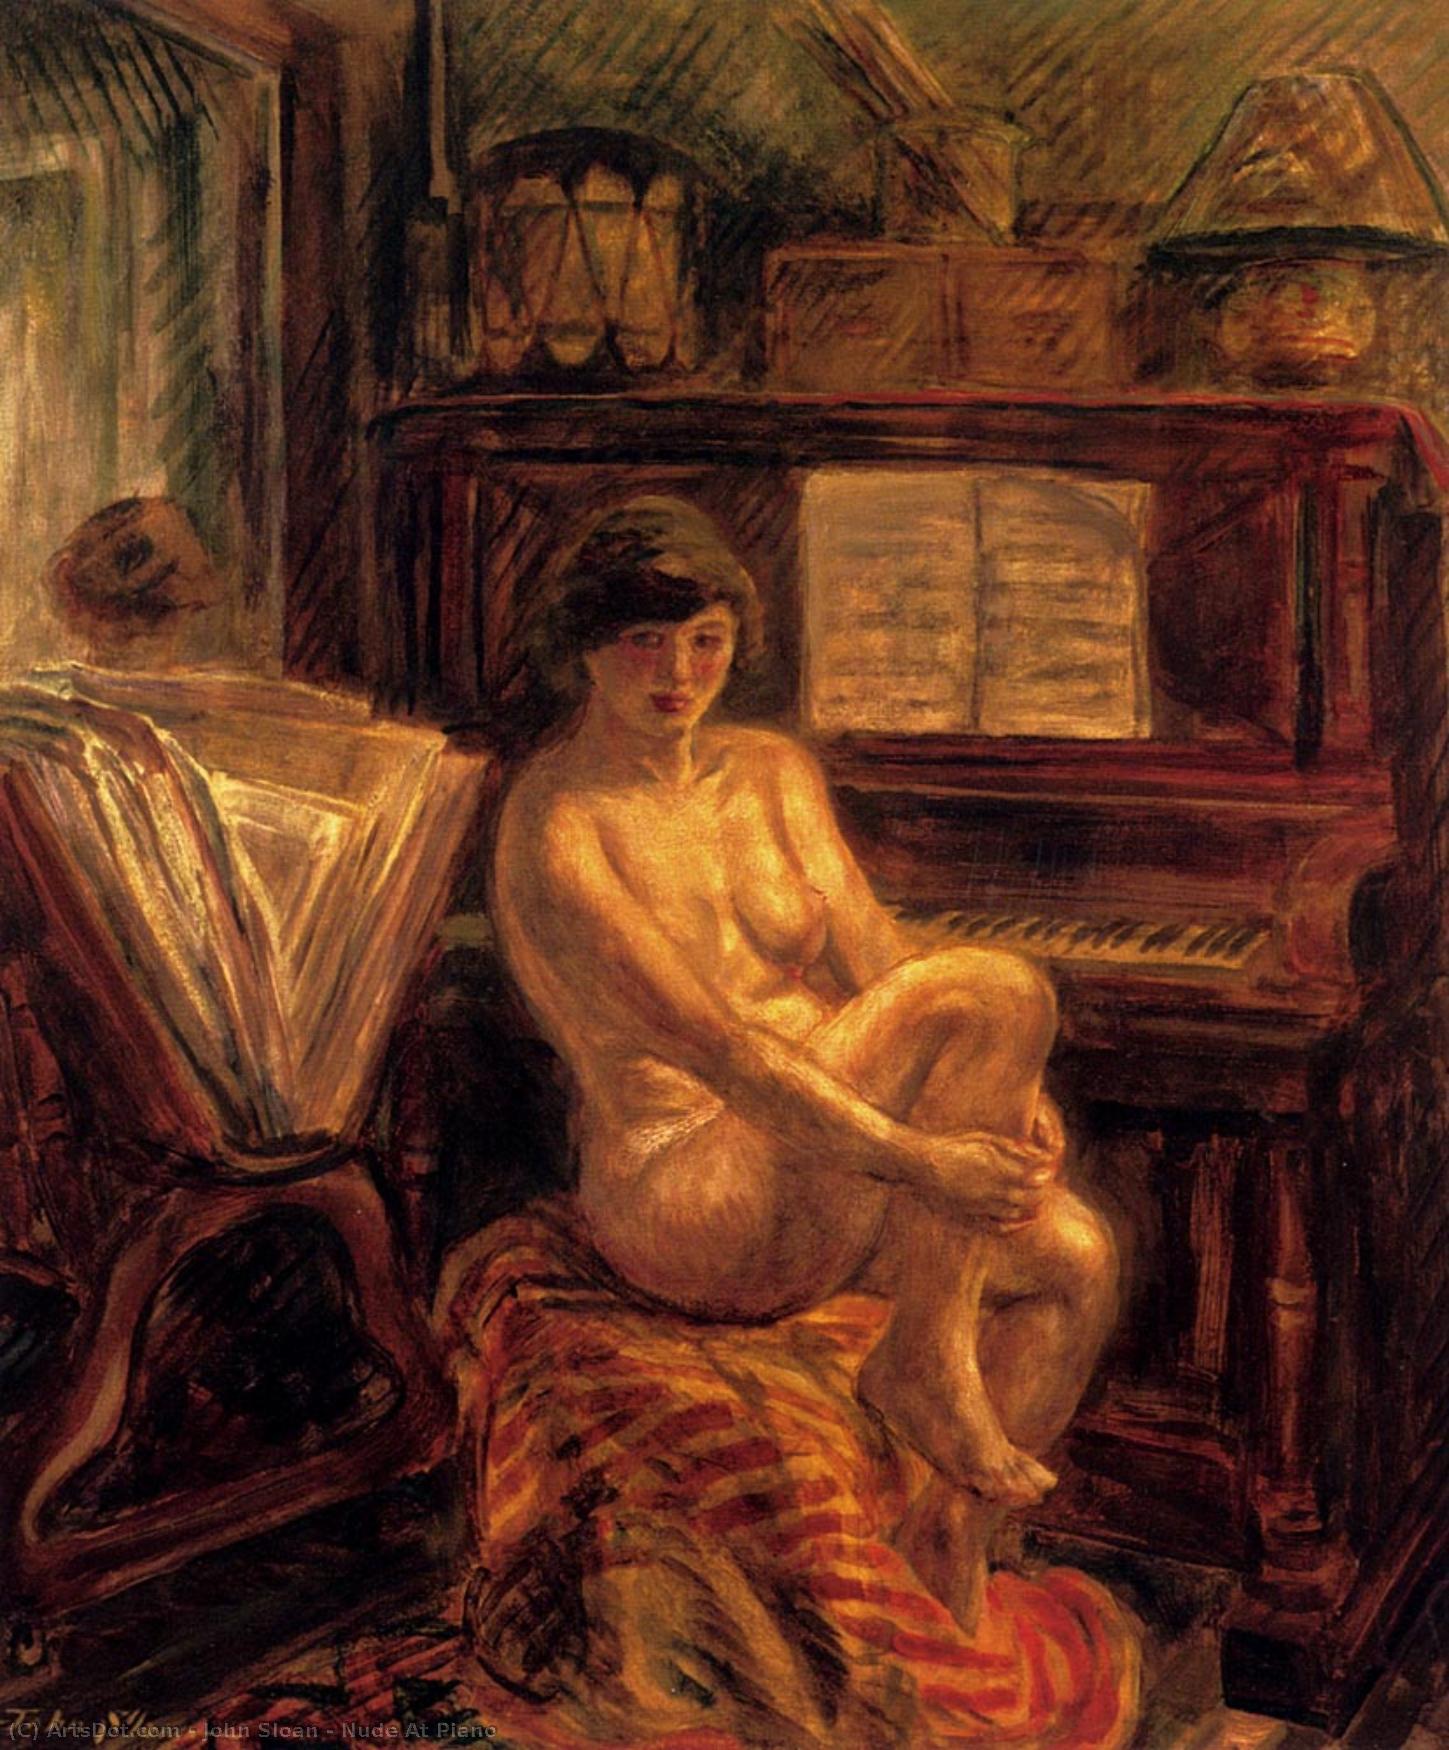  Art Reproductions Nude At Piano, 1928 by John Sloan (1871-1951, United States) | ArtsDot.com